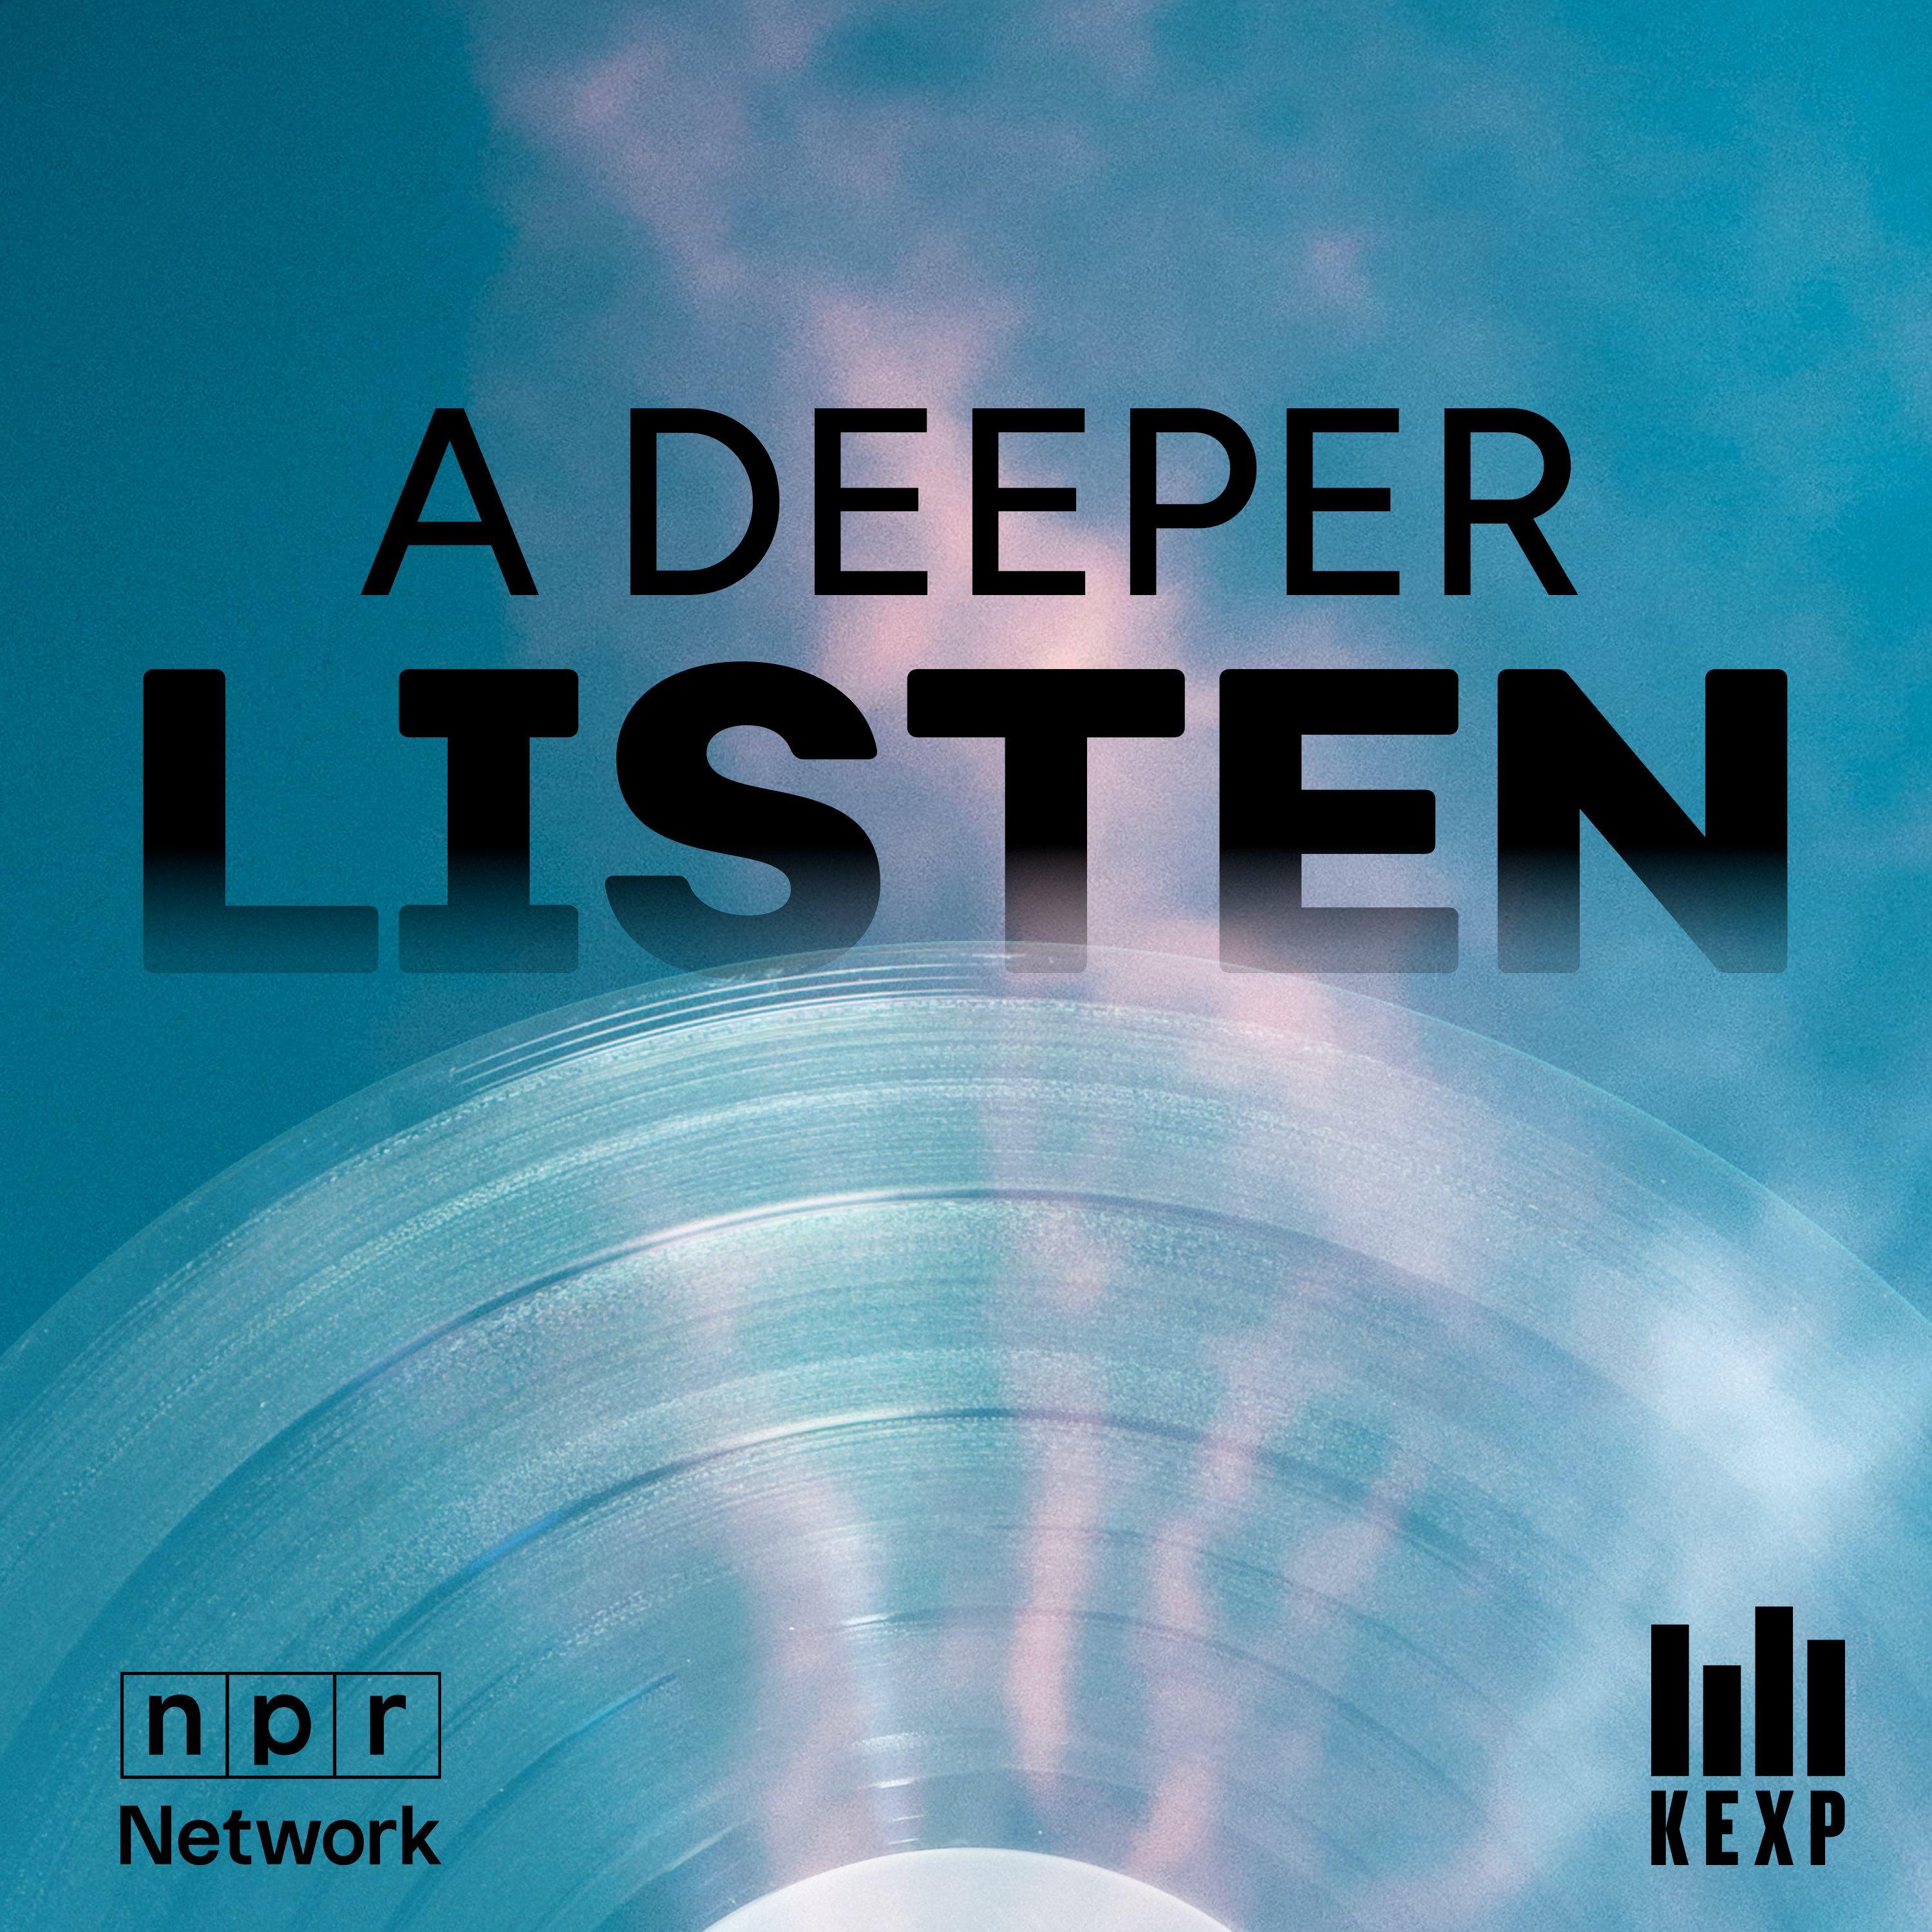 Introducing: A Deeper Listen